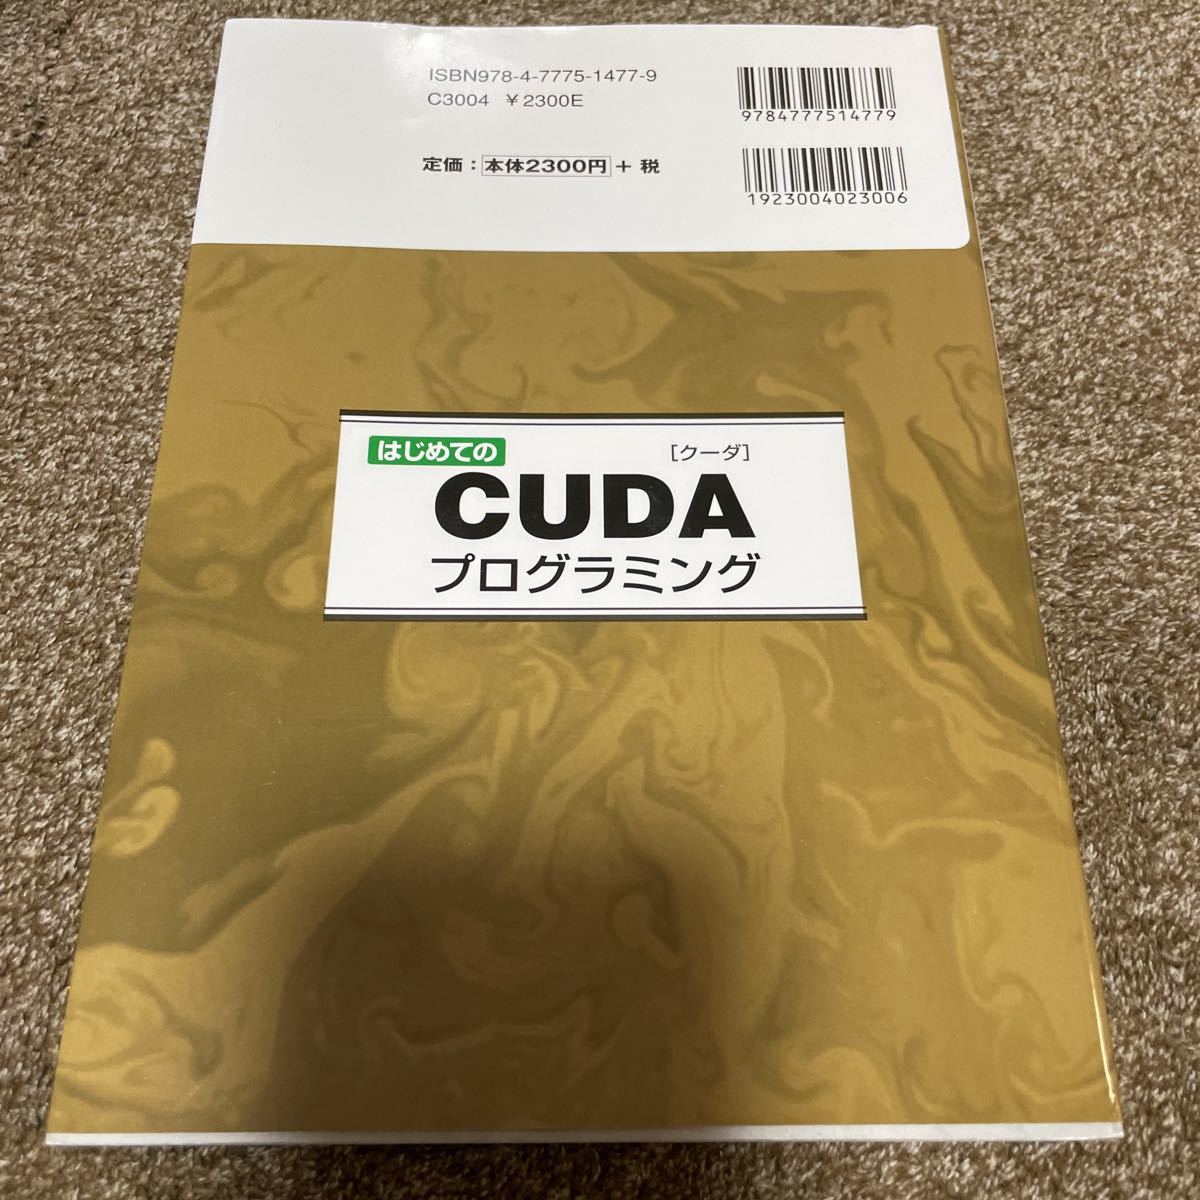 V впервые .. CUDA программирование сенсационный разработка окружающая среда (GPU+CUDA). используя . баклажан!